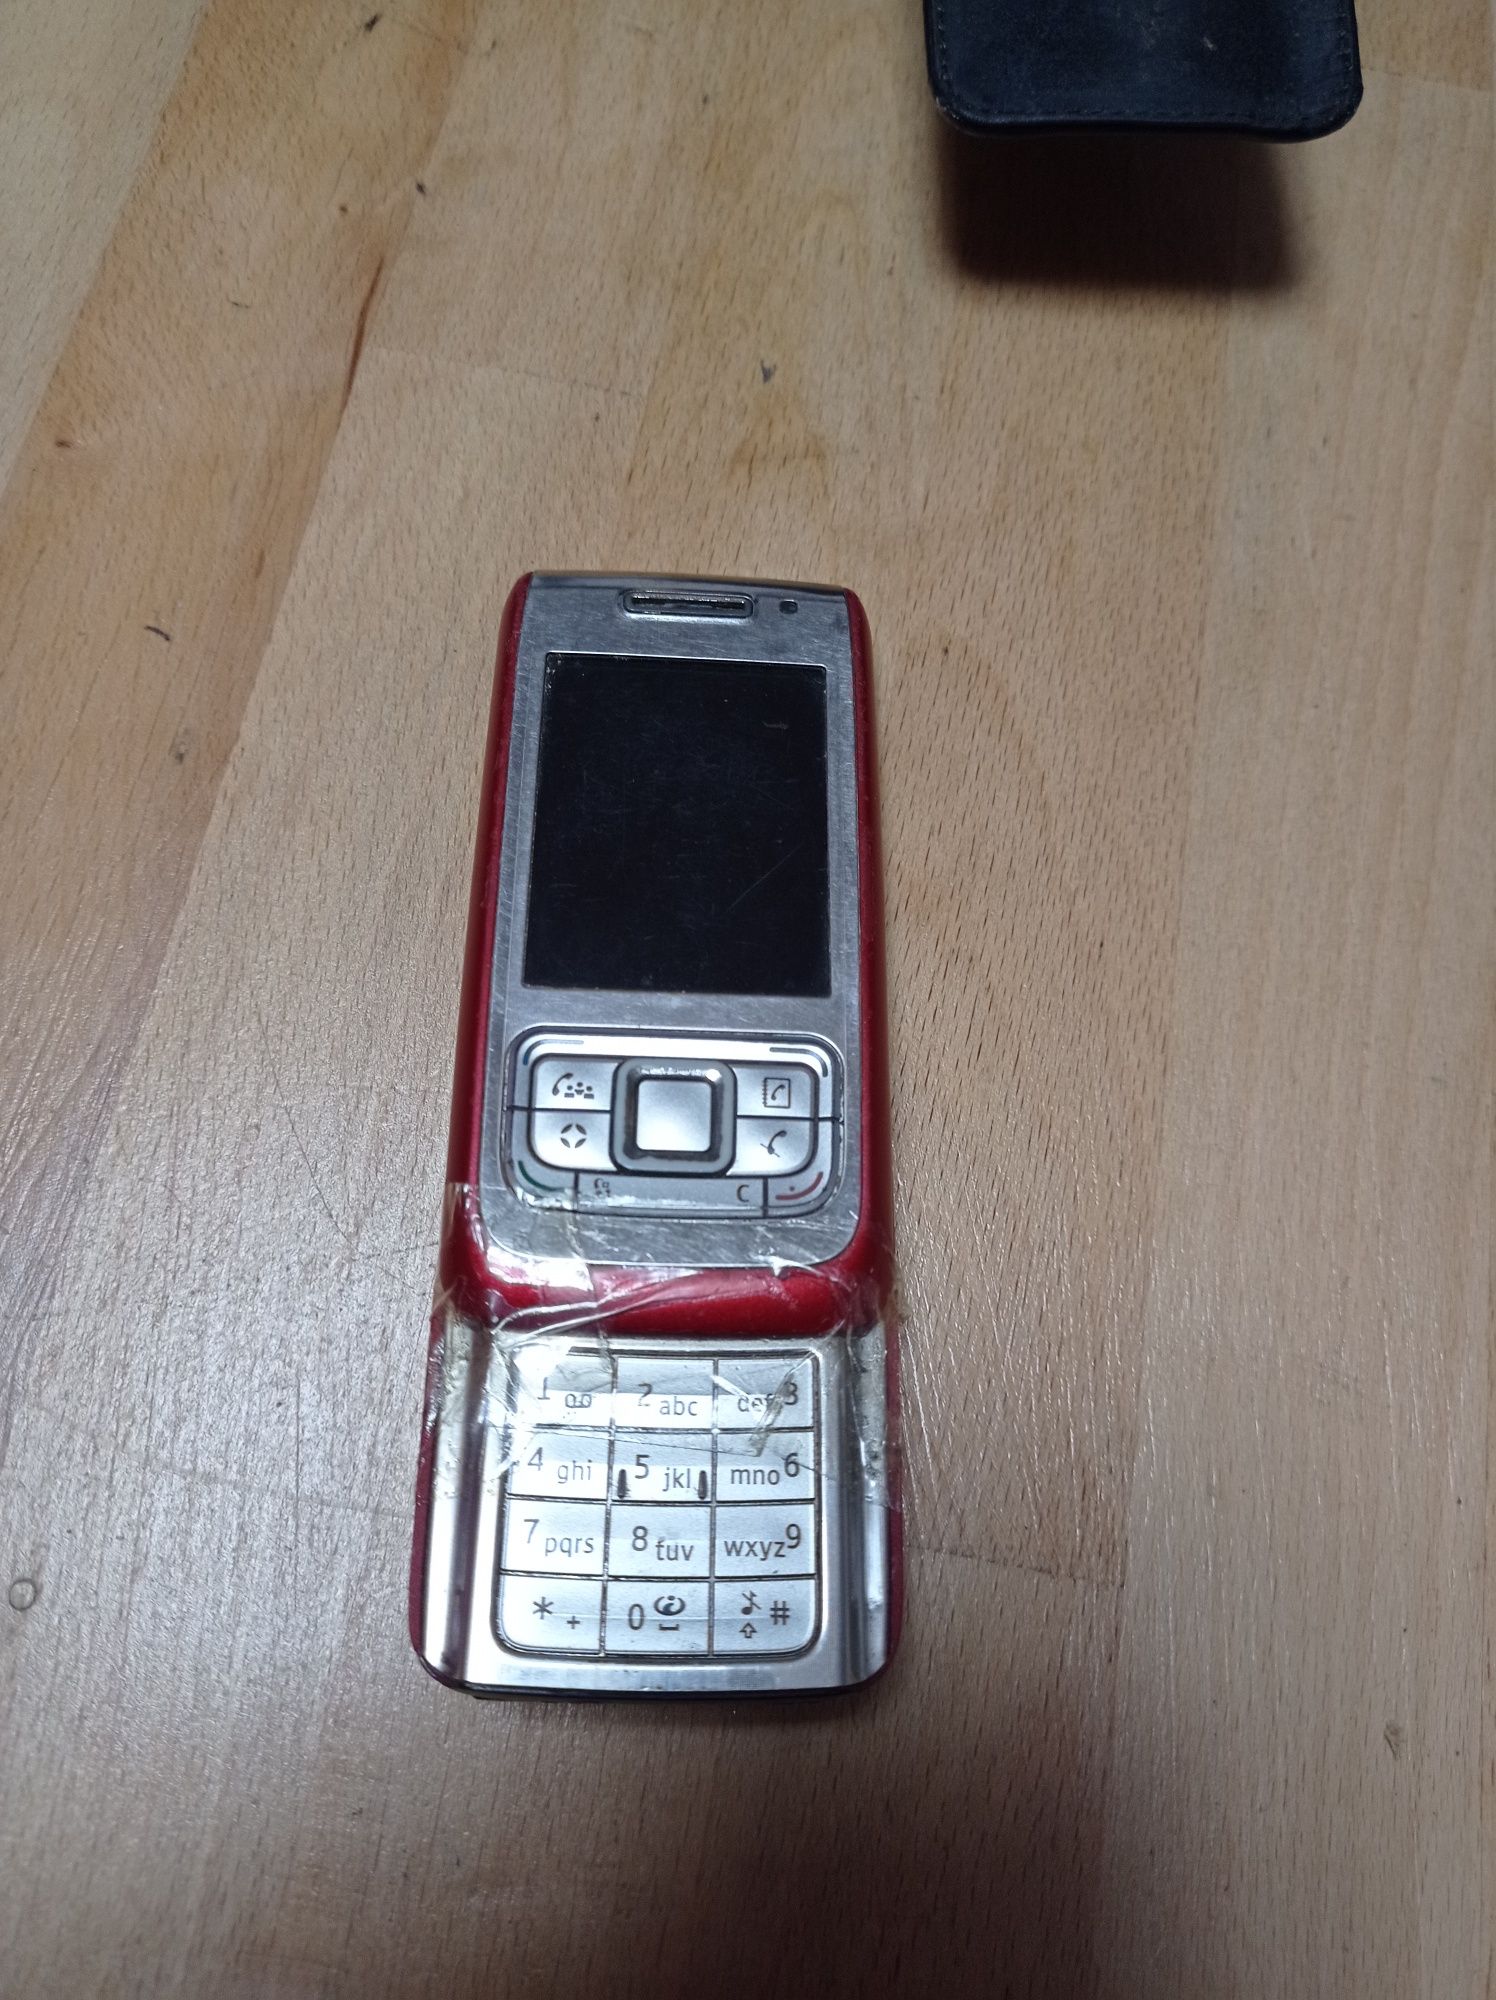 Nokia C5-03, 6230, E65-1, pentru colecționari